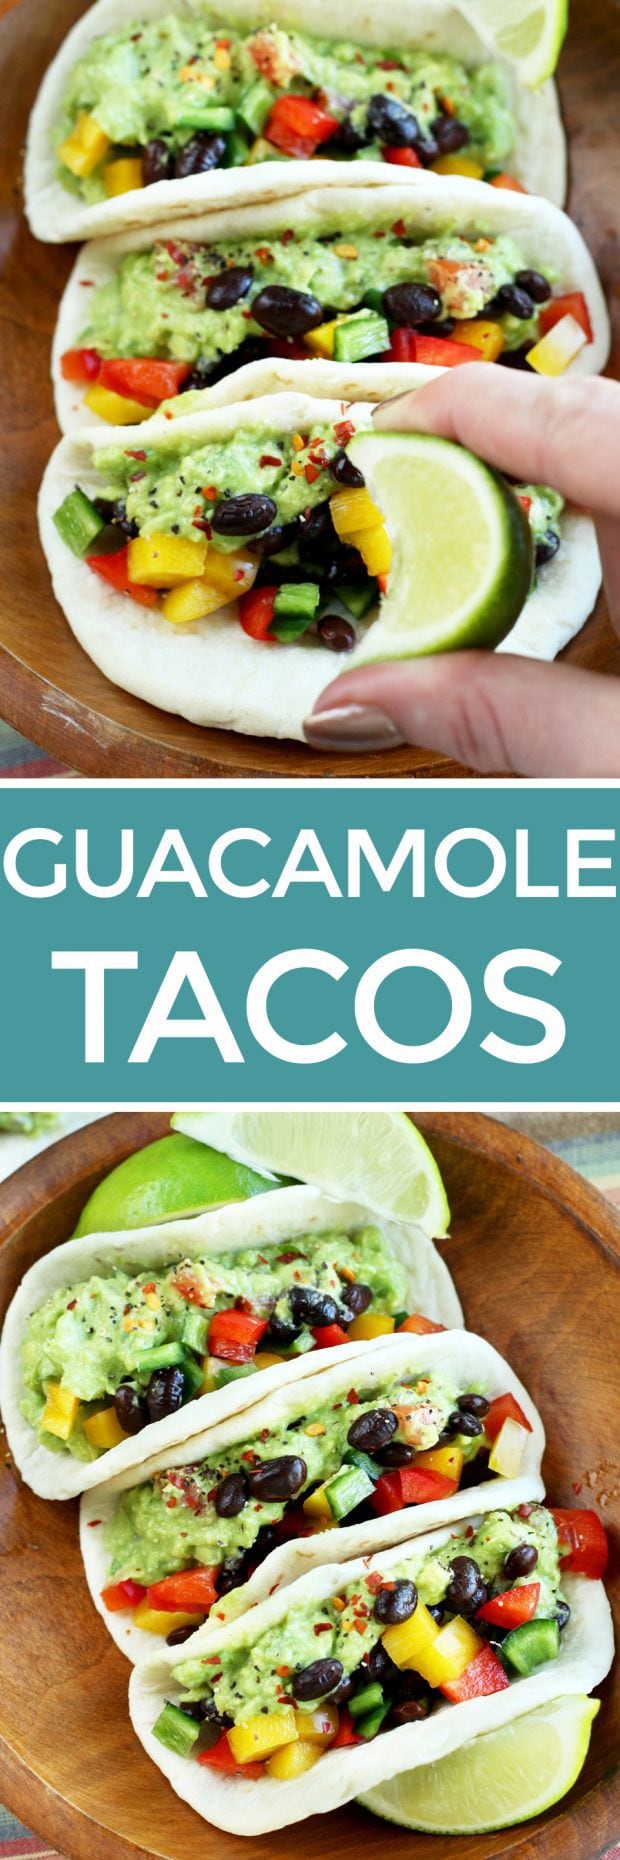 Guacamole Tacos